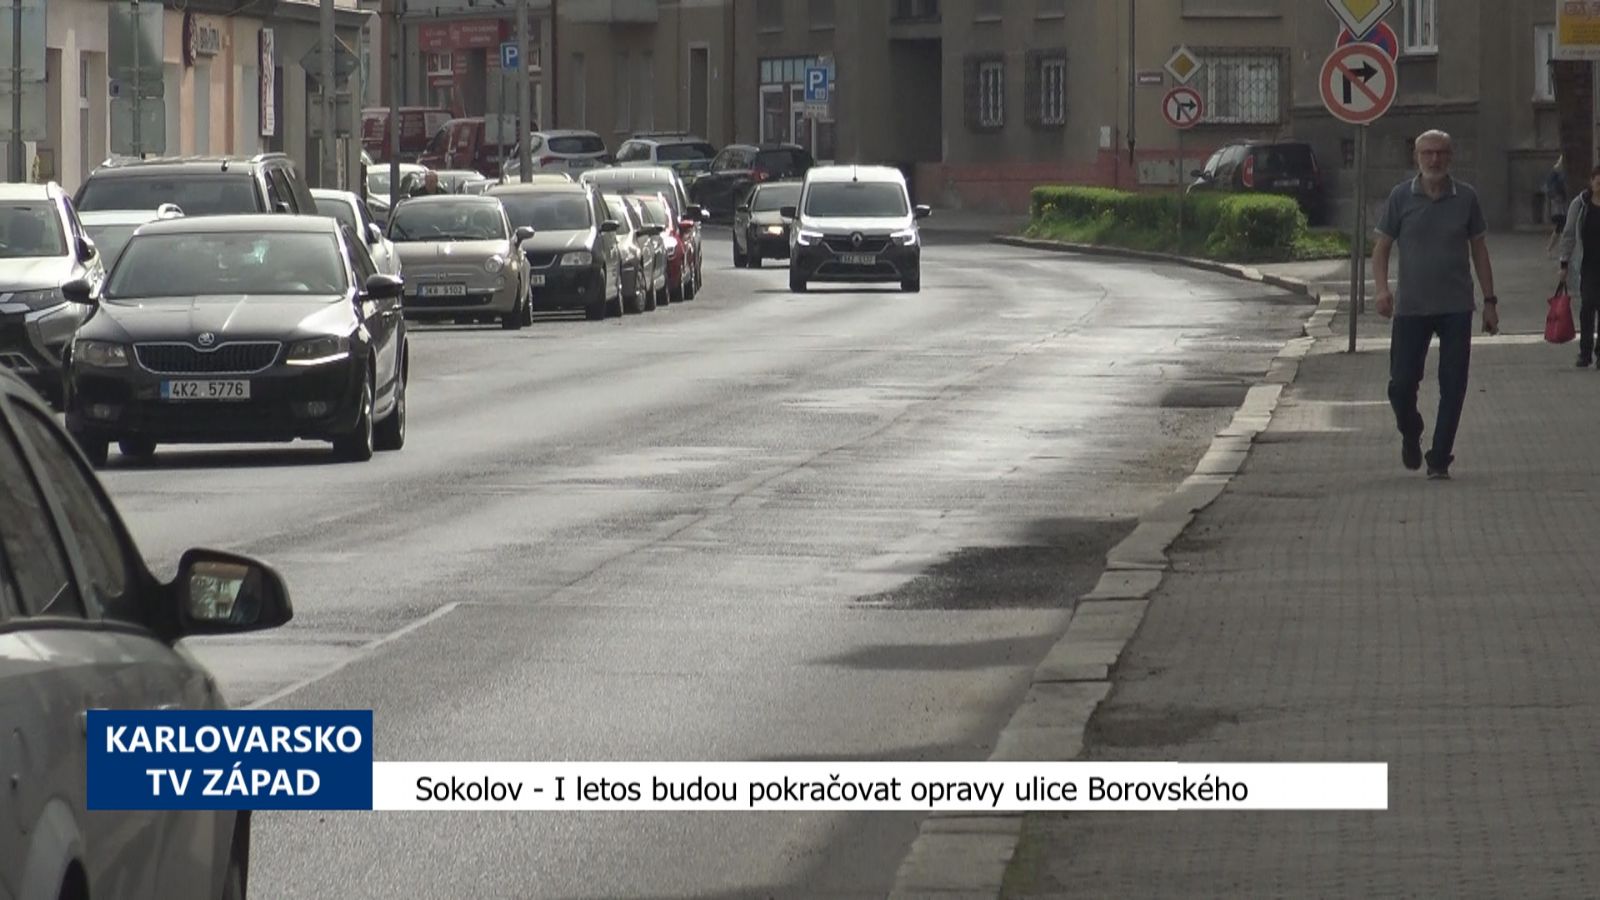 Sokolov: I letos budou pokračovat opravy ulice Borovského (TV Západ)